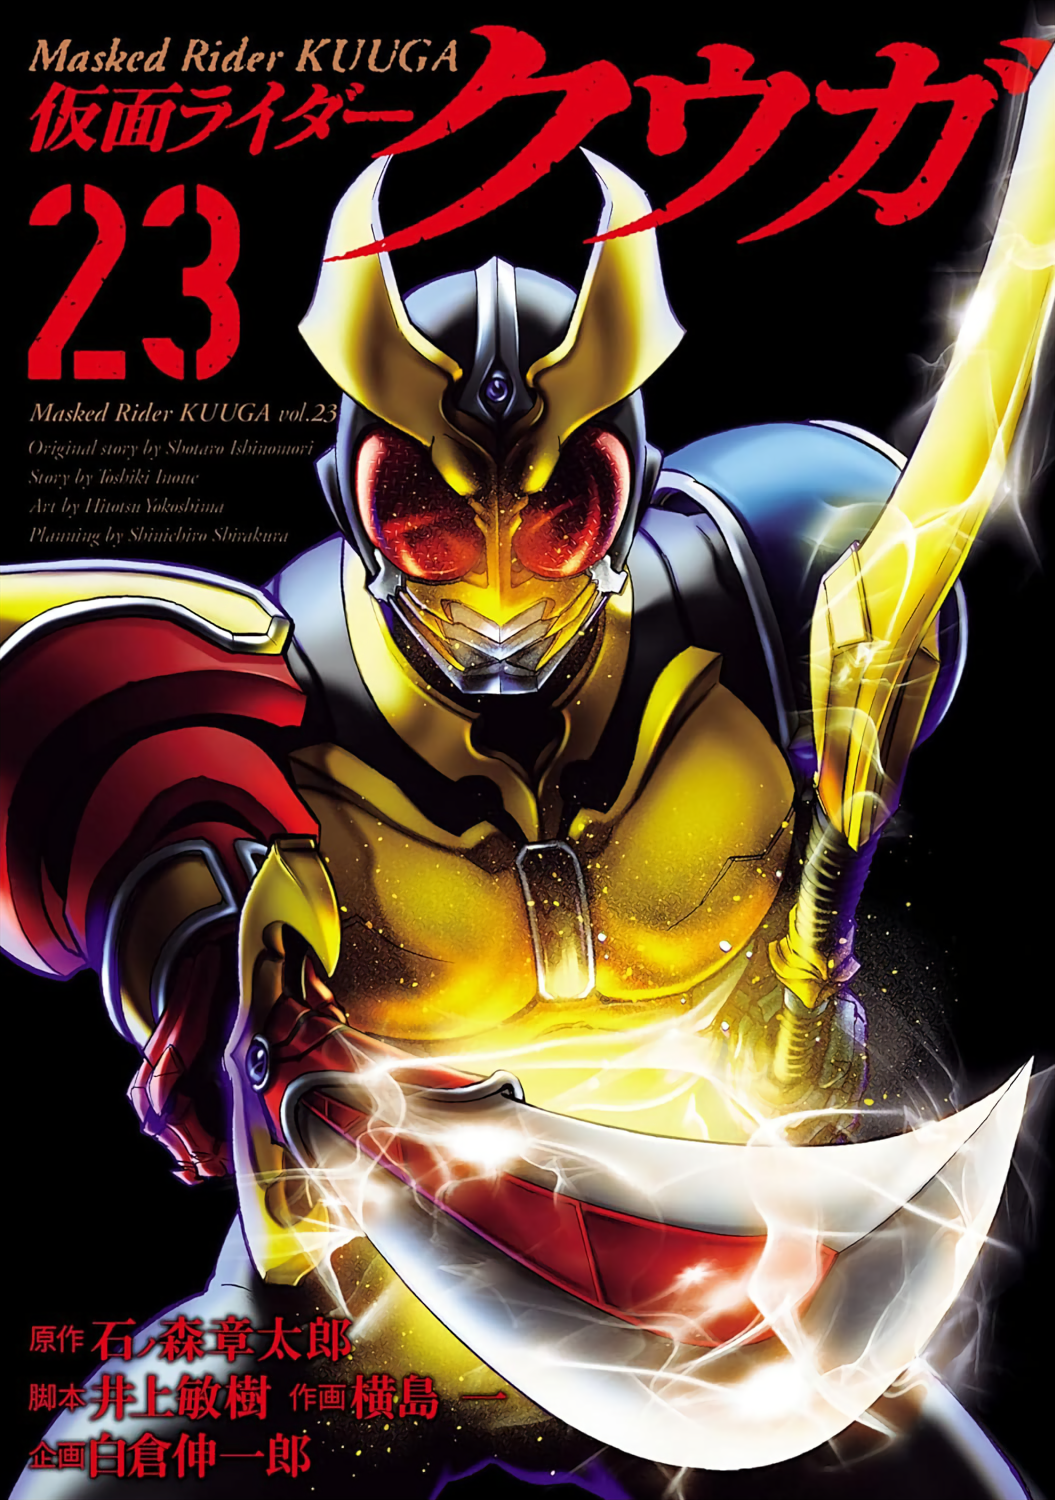 Kamen Rider Kuuga cover 0